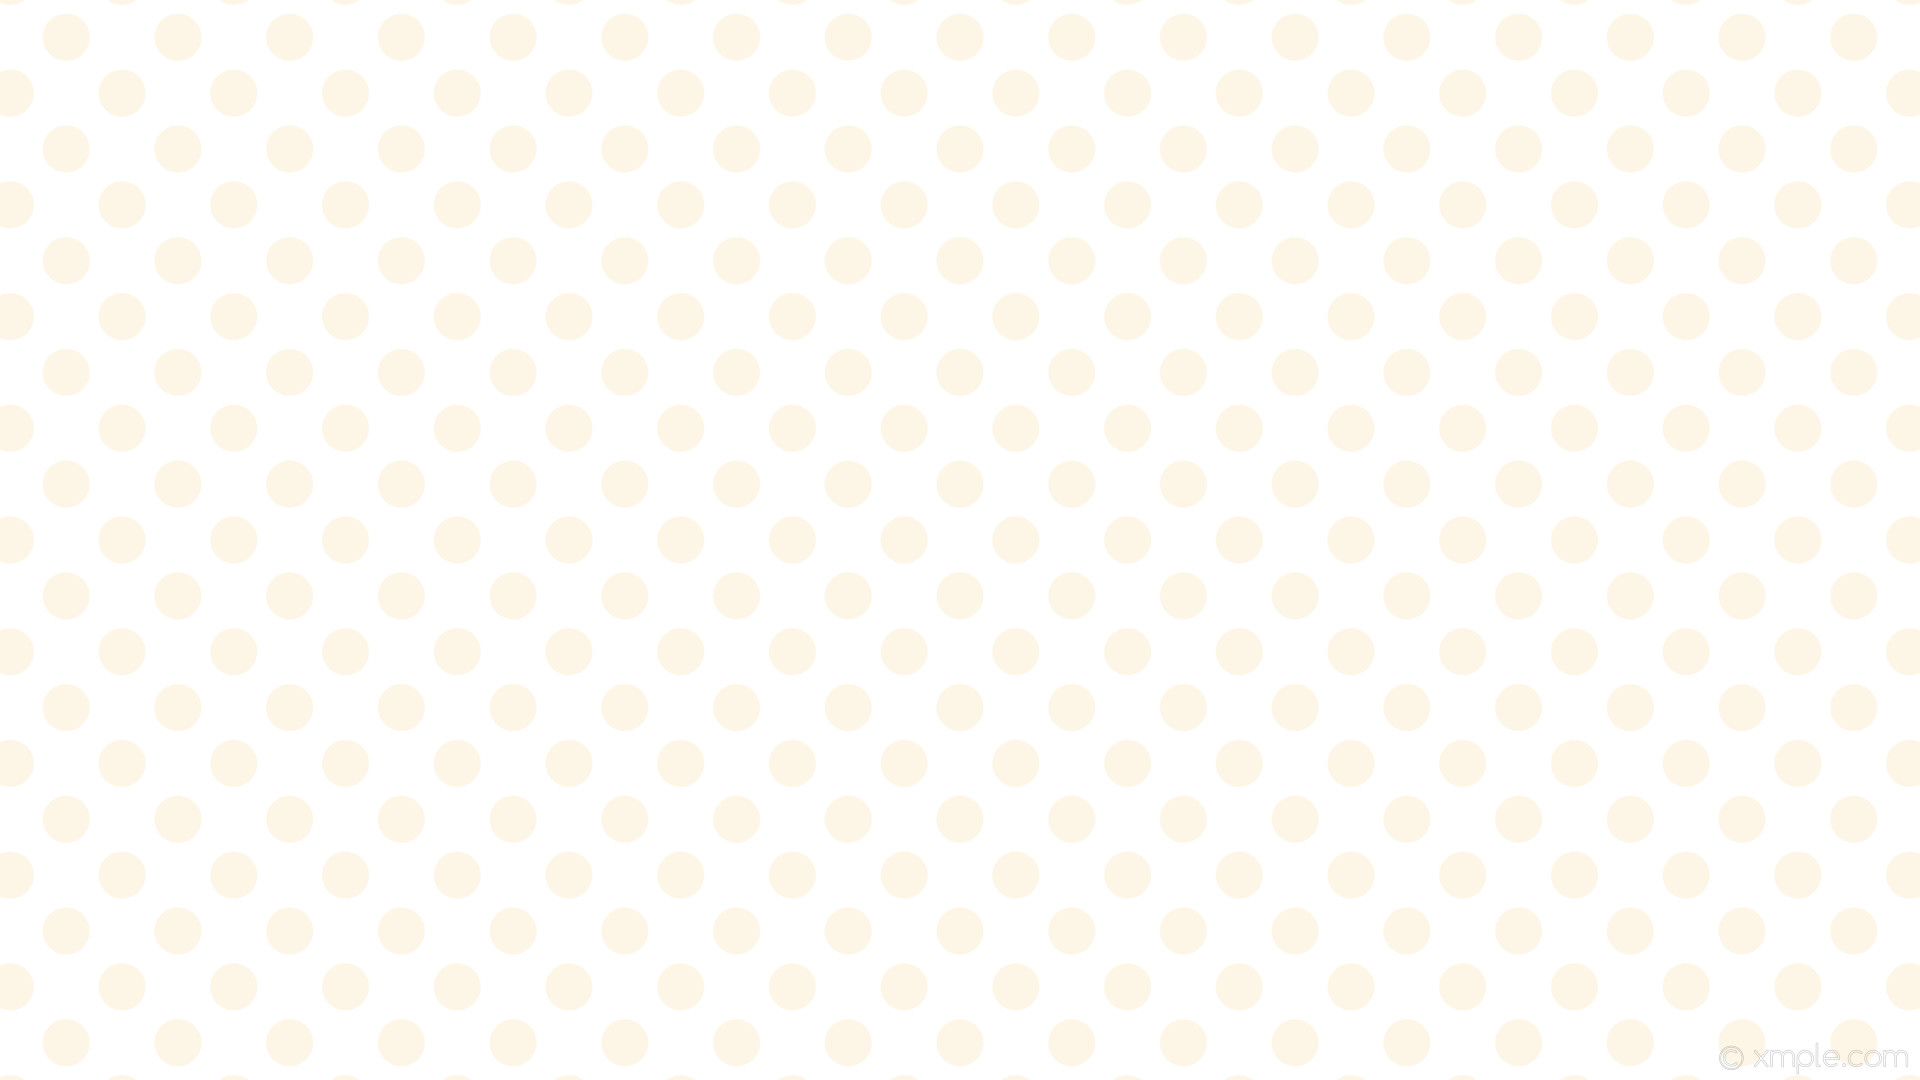 1920x1080 wallpaper polka white spots dots old lace #ffffff #fdf5e6 45Â° 47px 79px